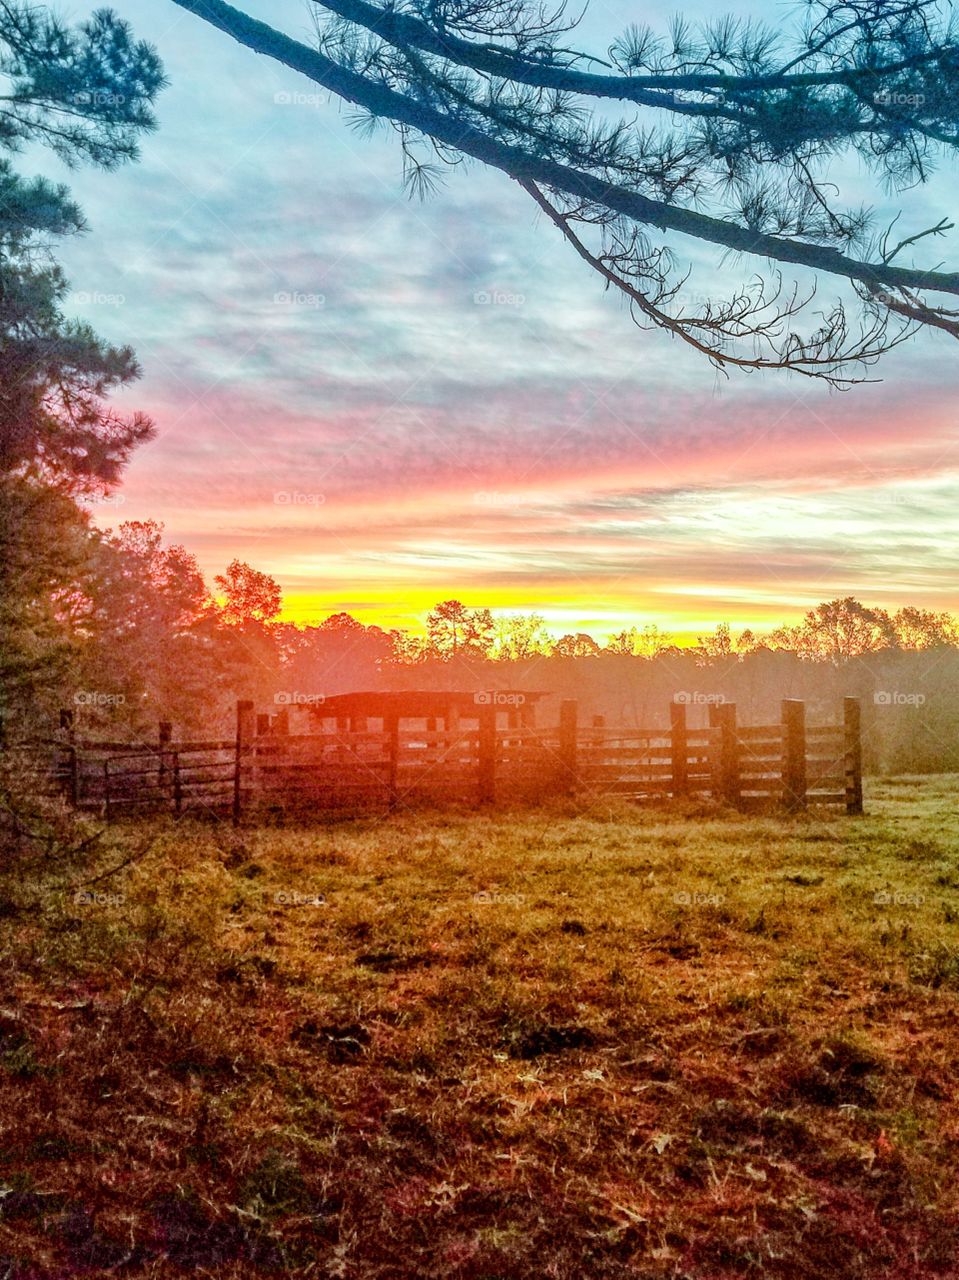 Alabama sunrises